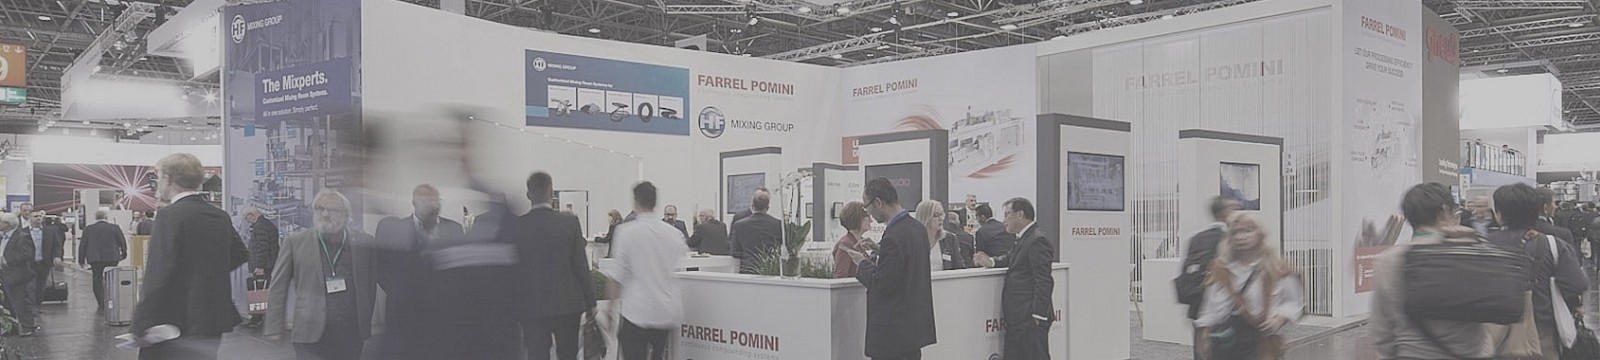 farrel pomini trade show